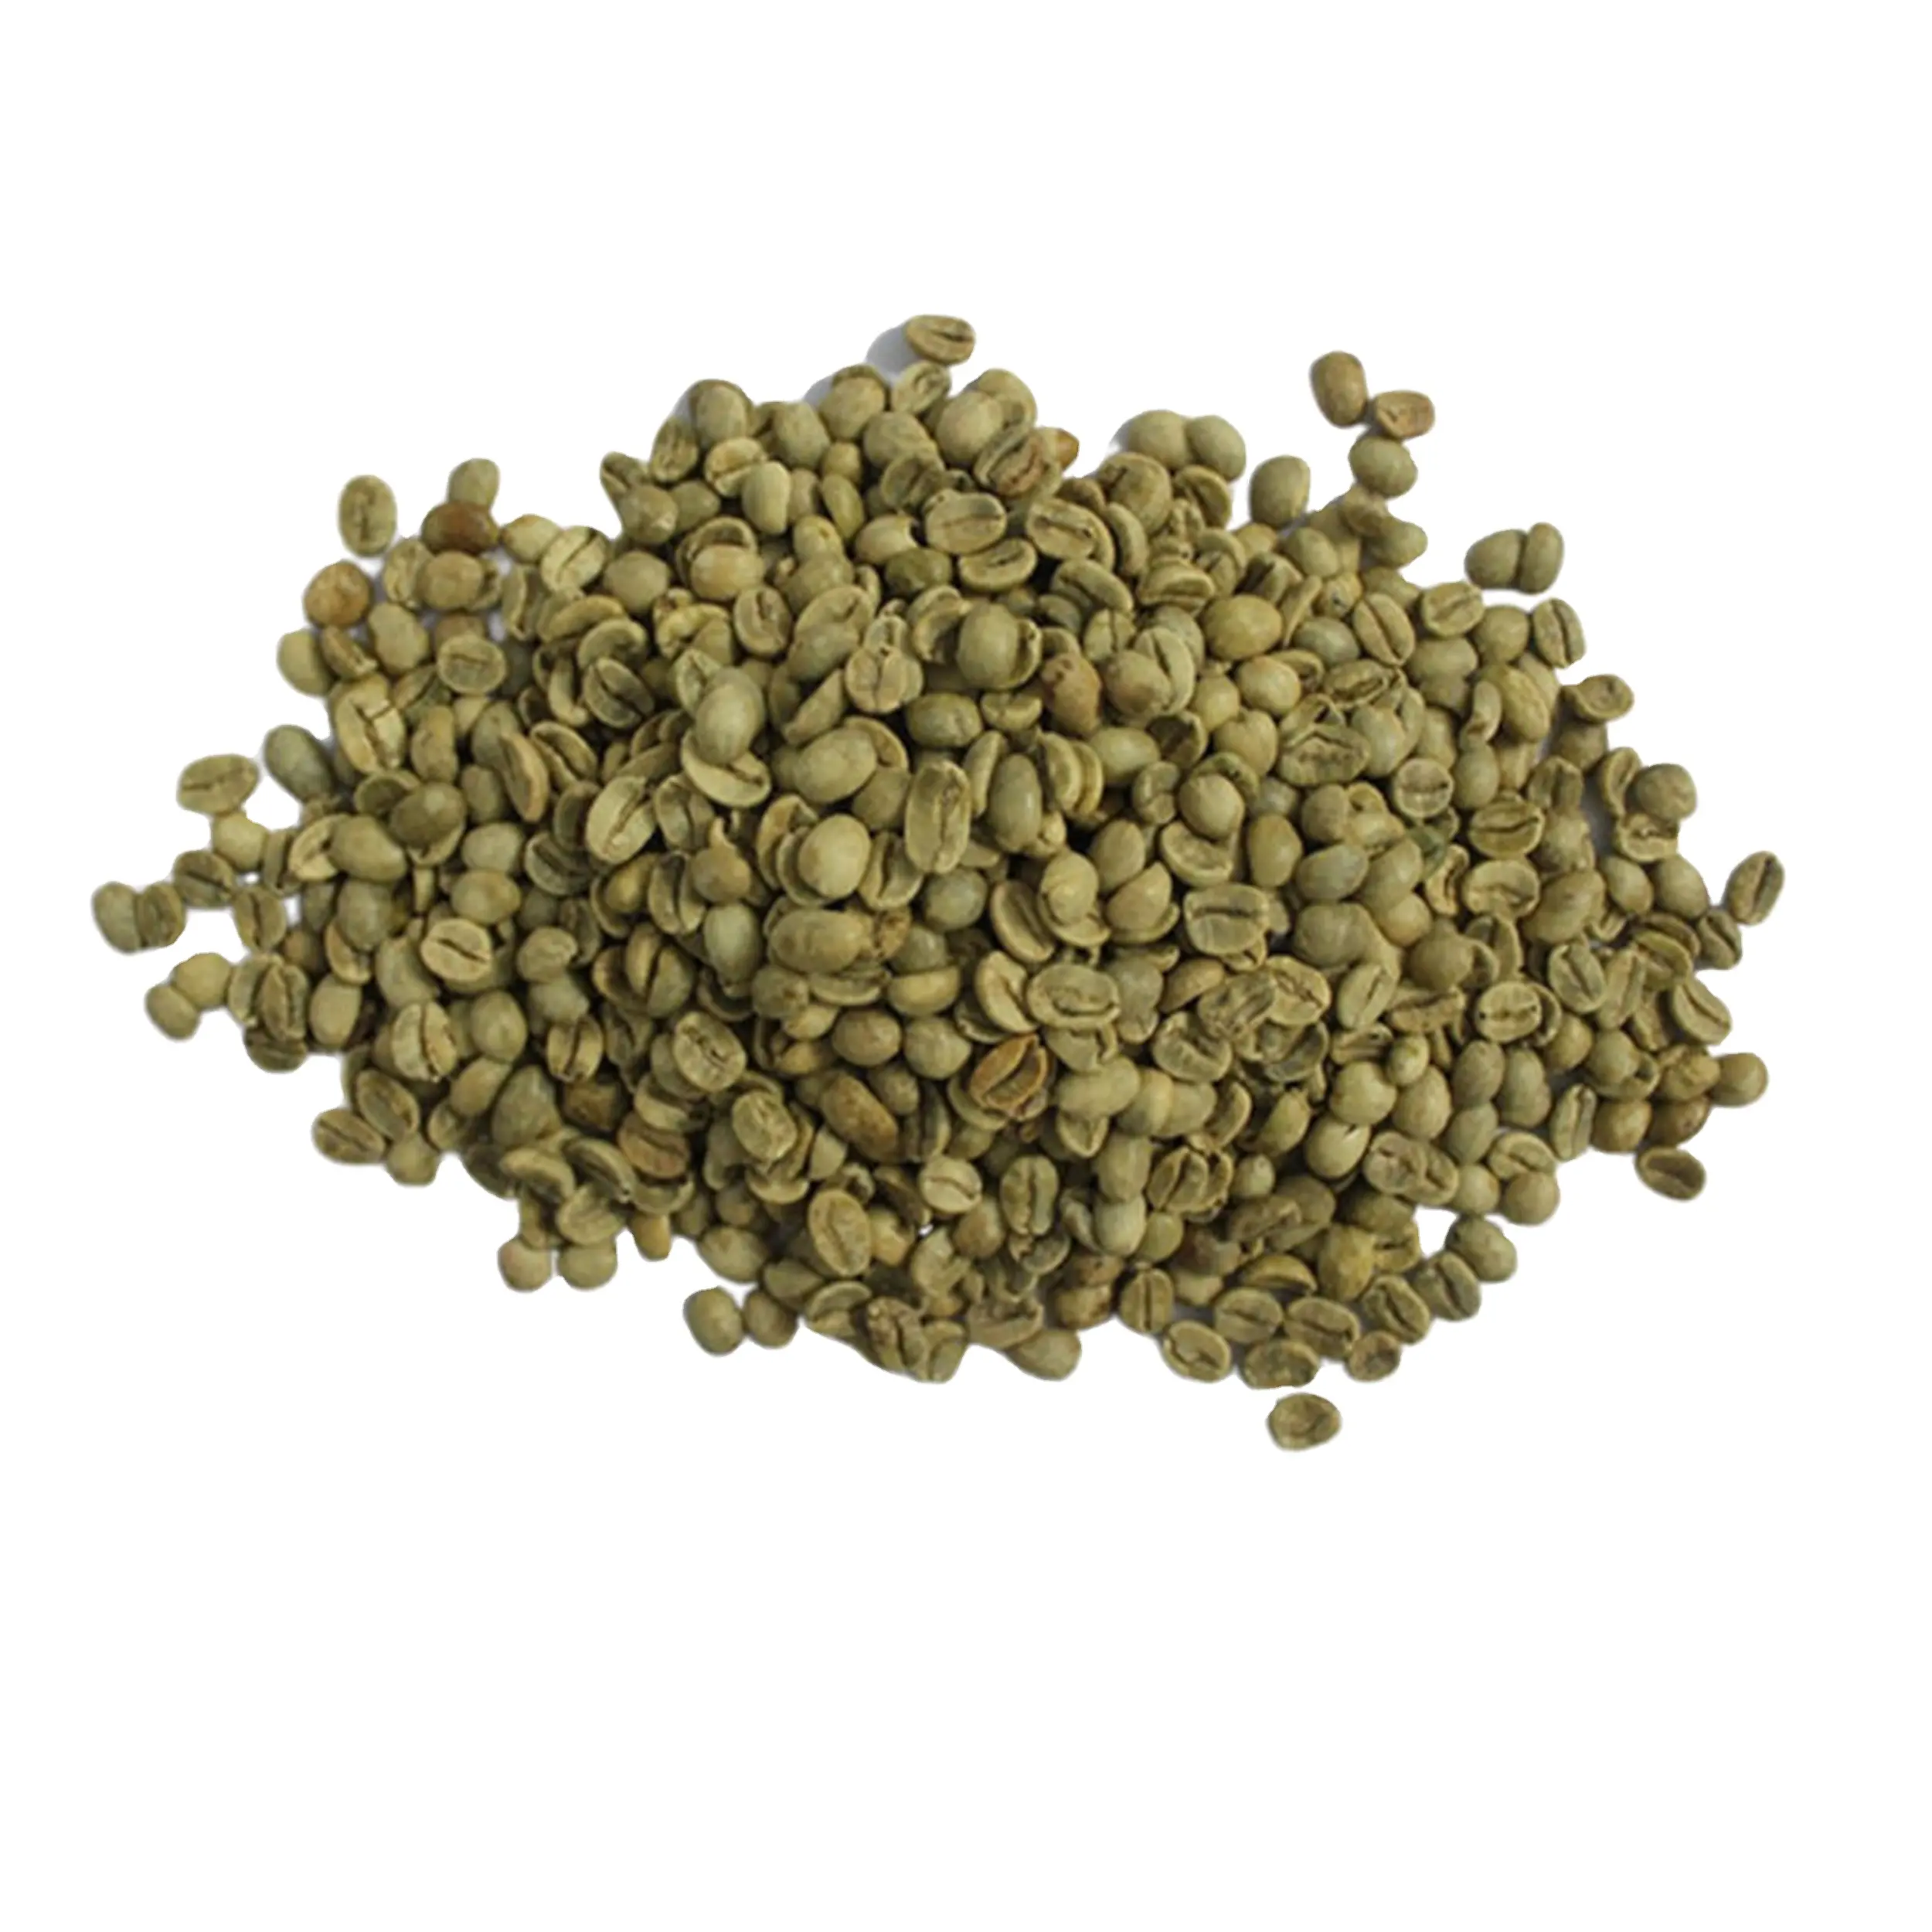 Kualitas Terbaik Premium Kelas hijau biji kopi Vietnam asli HARGA TERBAIK 100% alami hijau biji kopi terlaris